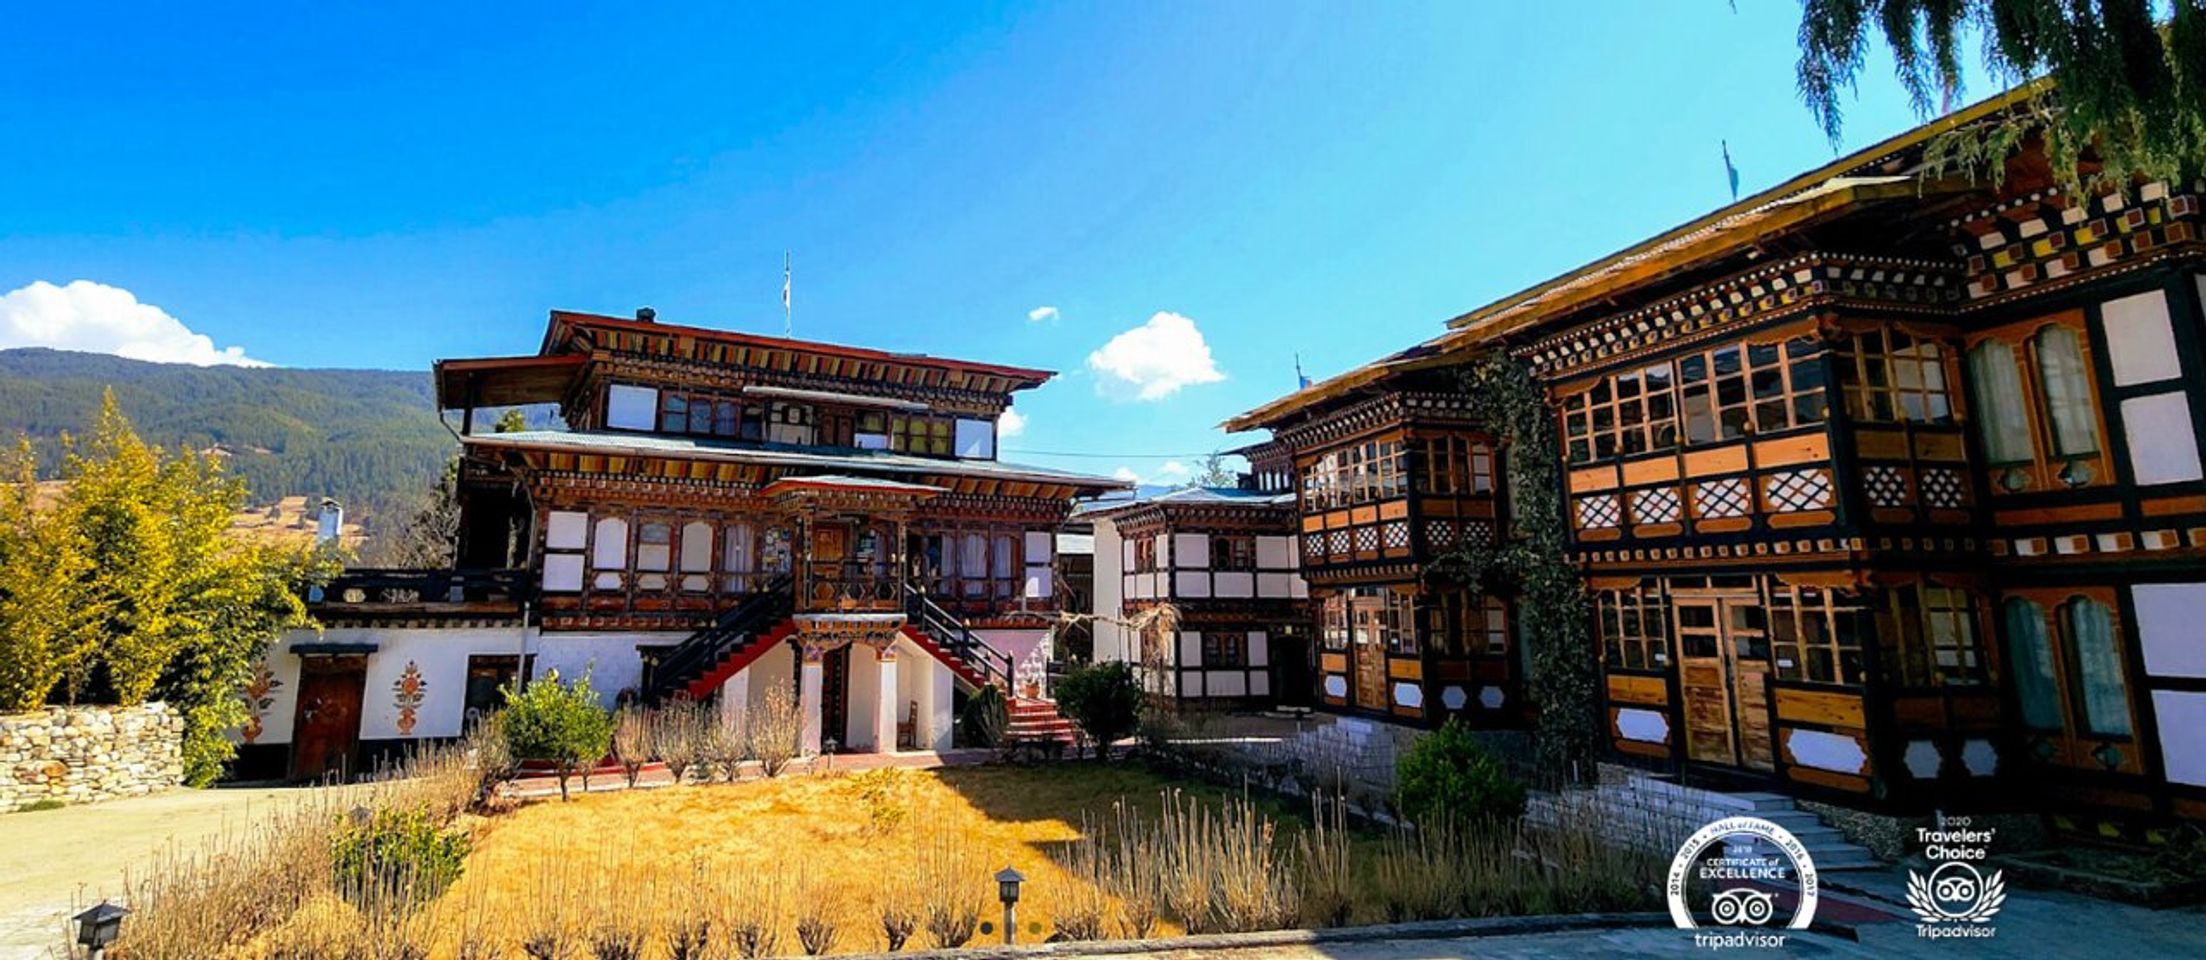 Het ontdekken van de verborgen juweeltjes van Jakar, Bhutan: Essentiële tips voor een onvergetelijke reis